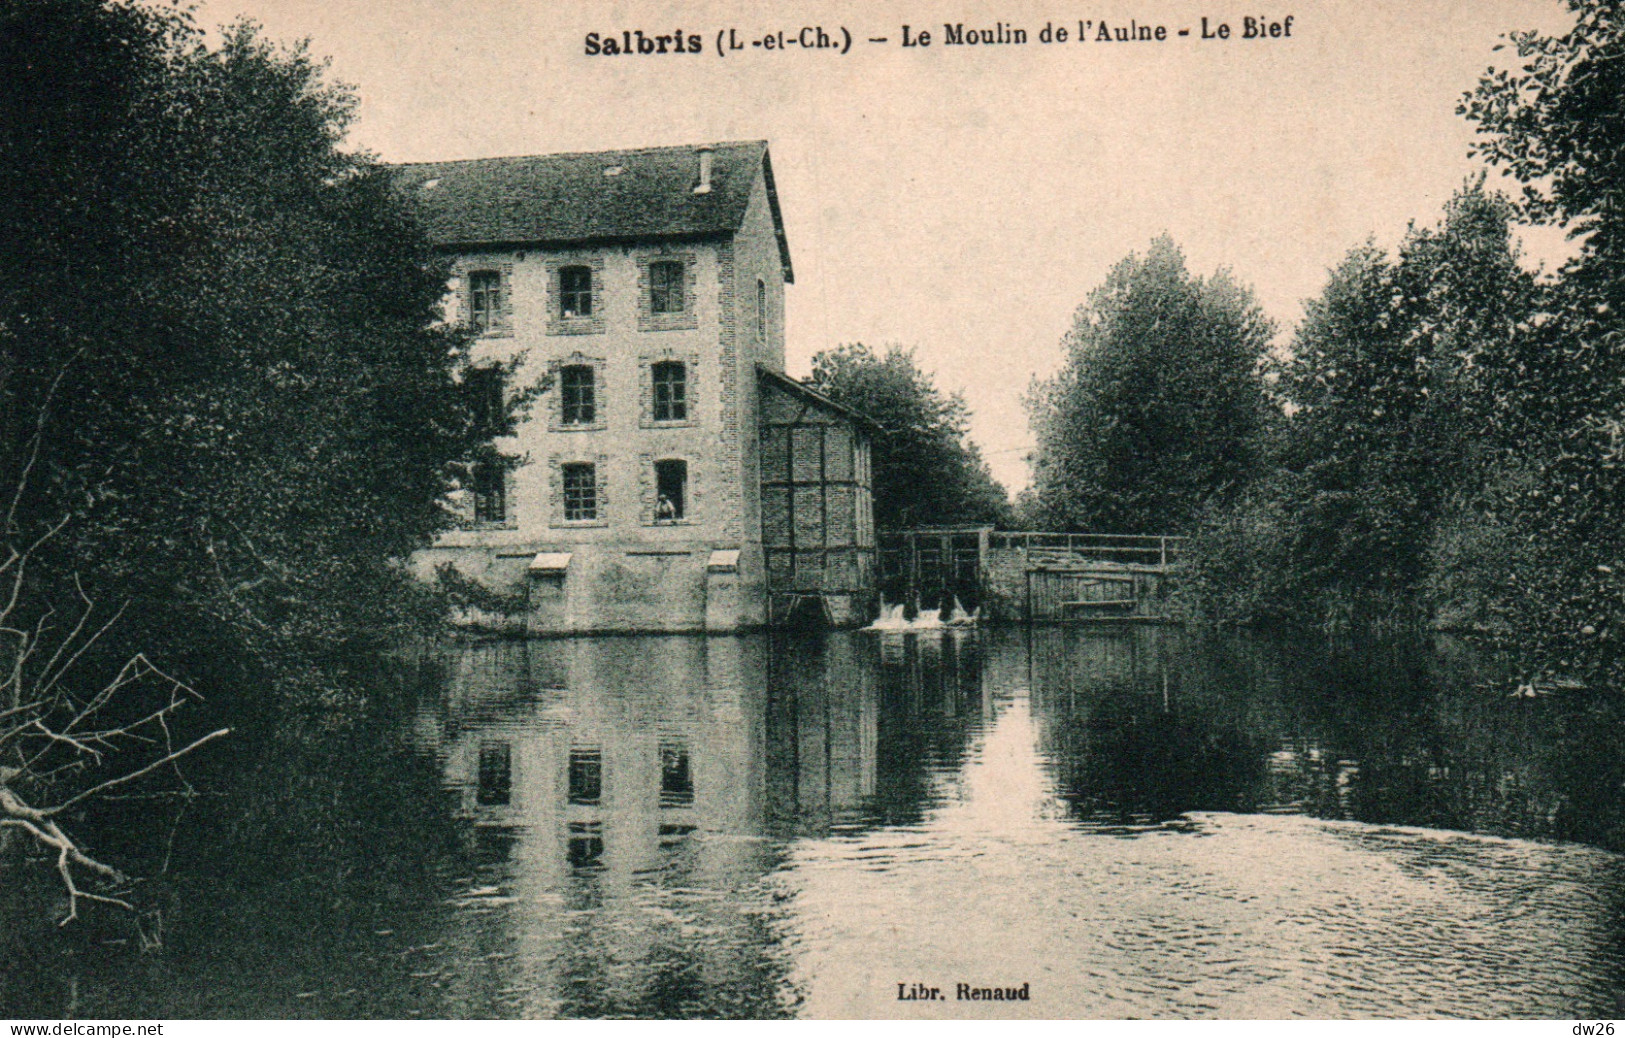 Moulins à Eau - Salbris (Loir-et-Cher) Le Moulin De L'Aulne, Le Bief - Librairie Renaud - Carte Non Circulée - Wassermühlen